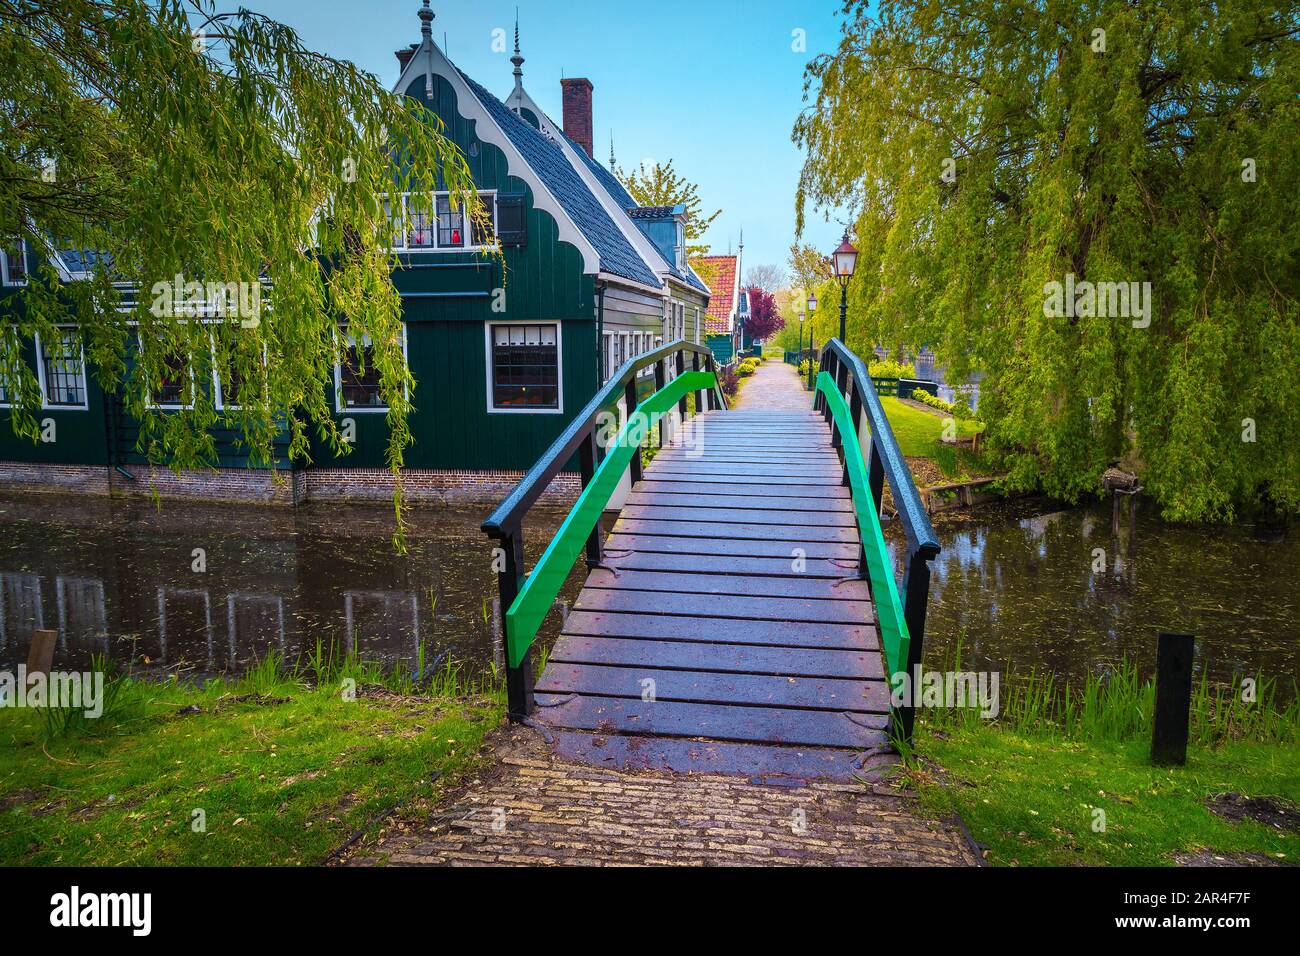 Maison rurale et rue avec pont en bois. Destination touristique populaire au musée du village de Zaanse Schans, Pays-Bas, Europe Banque D'Images